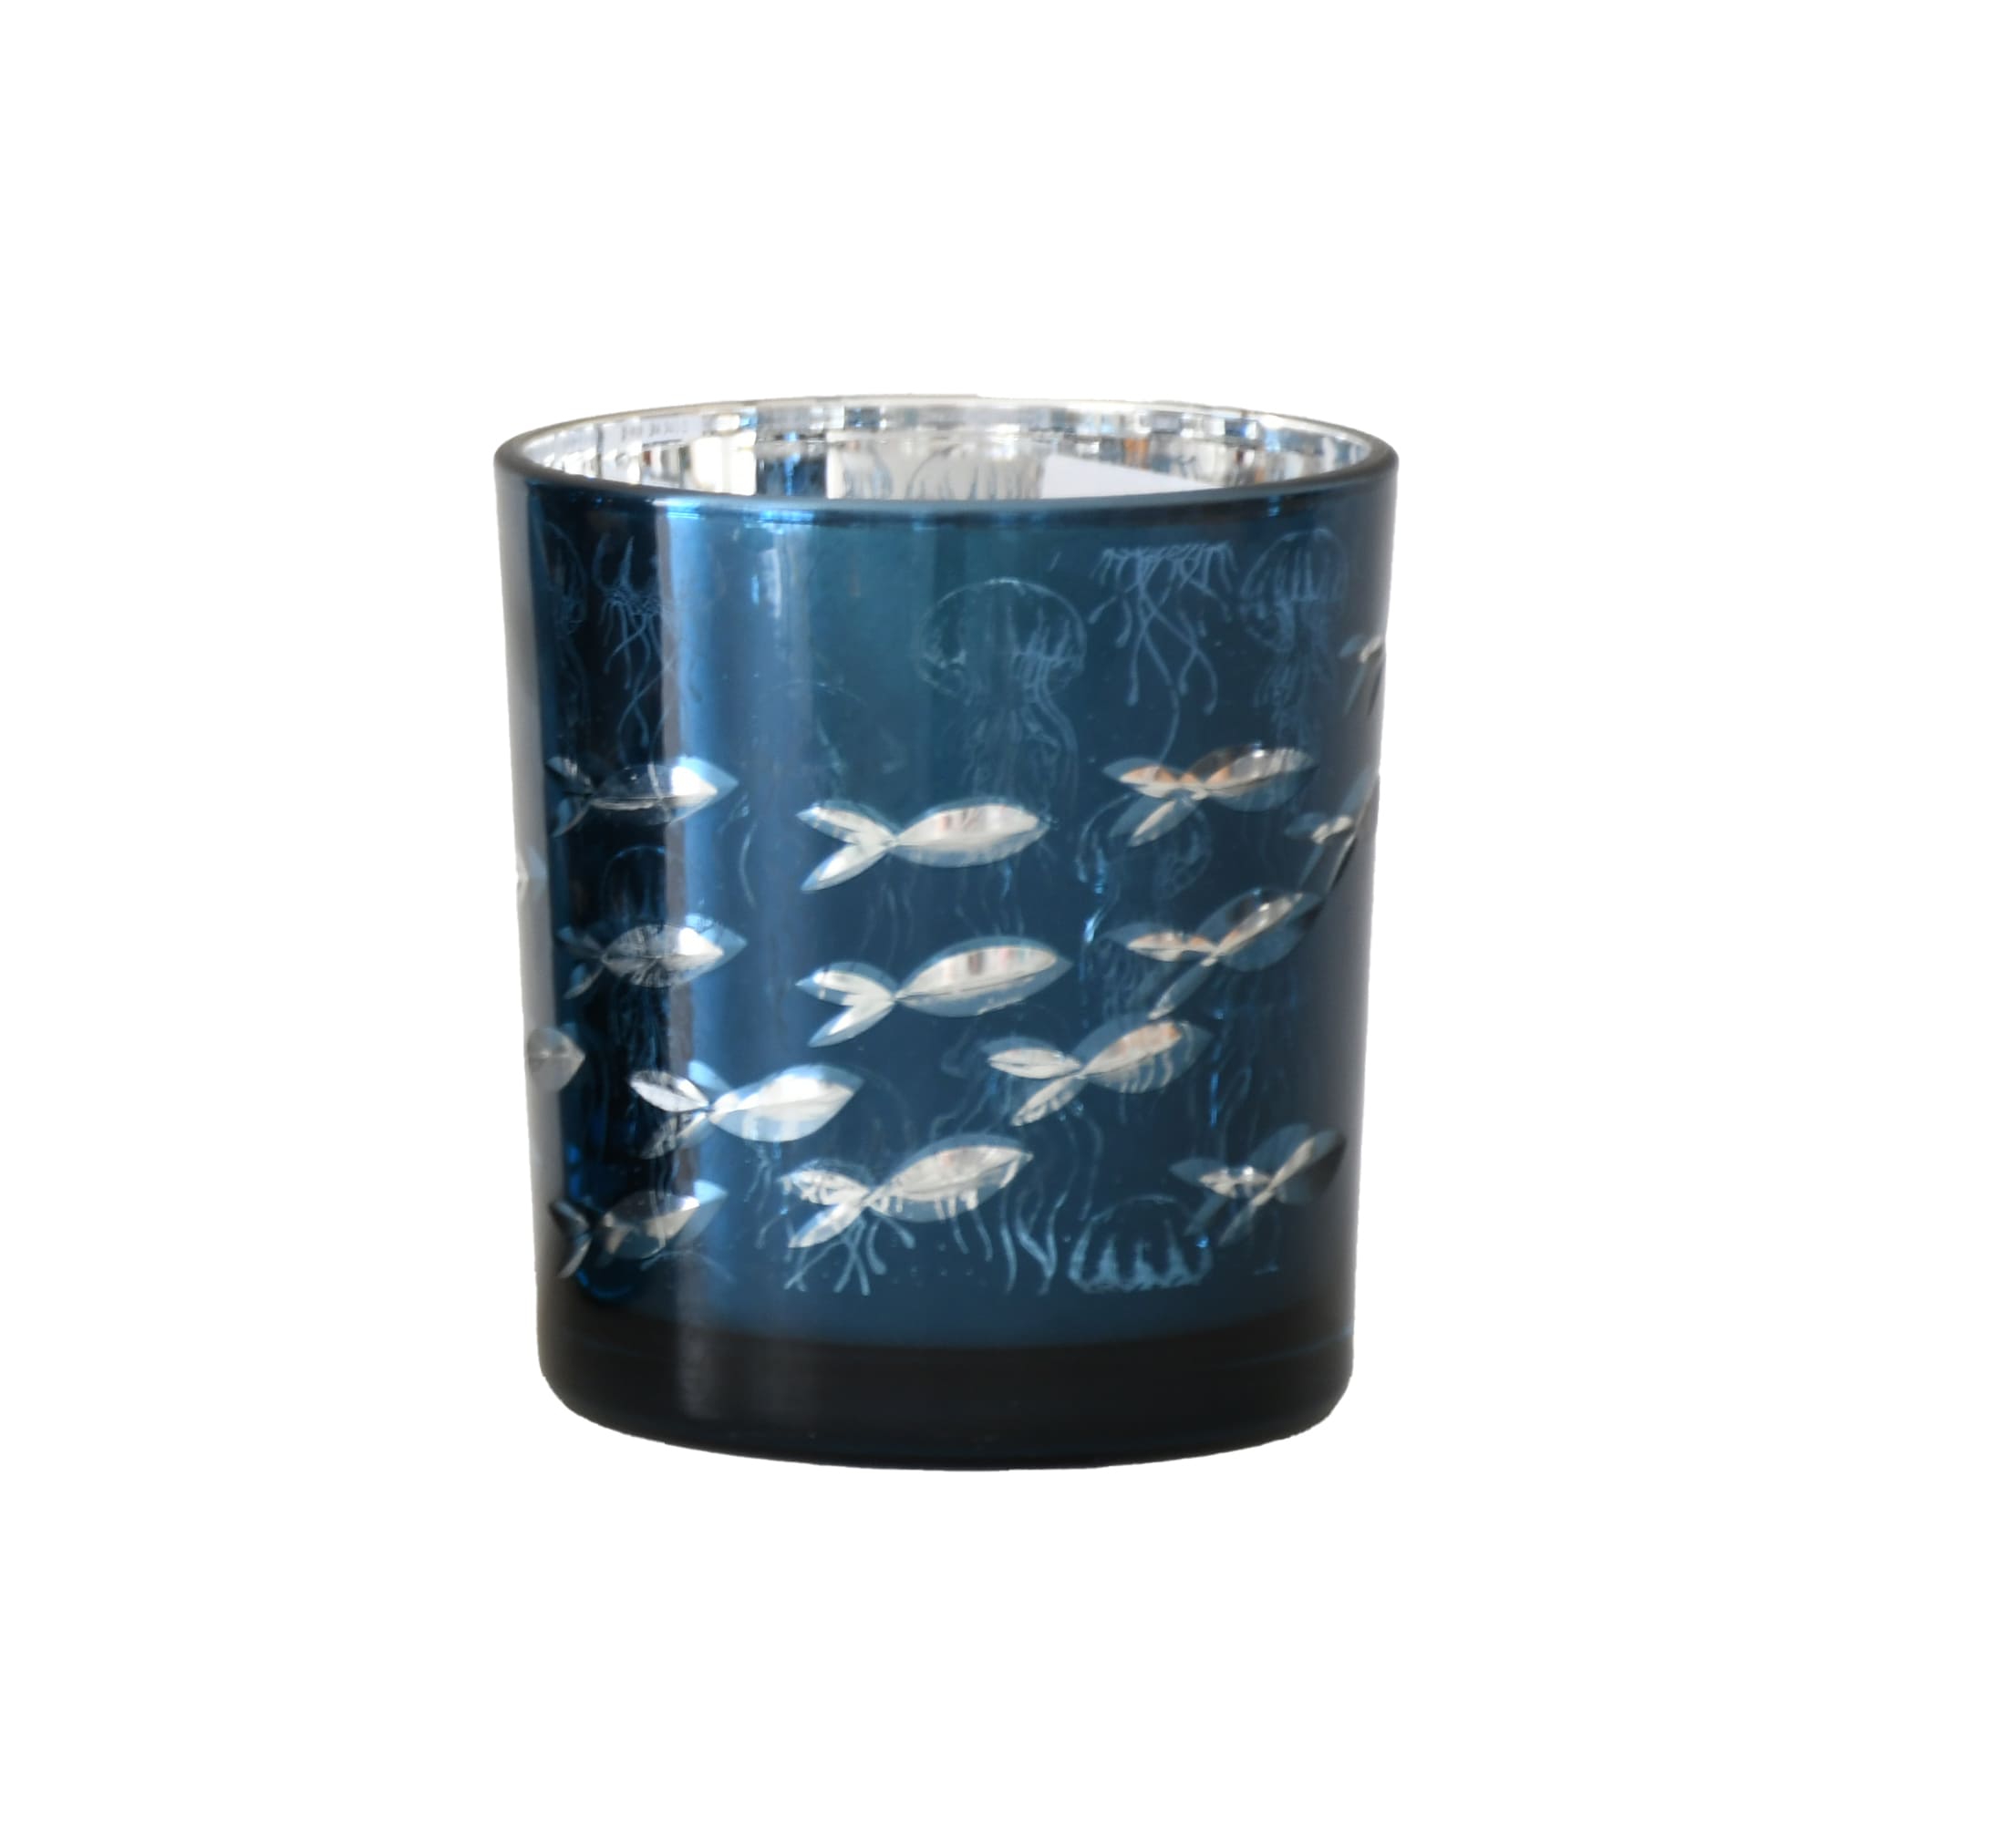 Votivlicht Glas blau metallic mit Fischschwarm D=7,3cm H=8cm